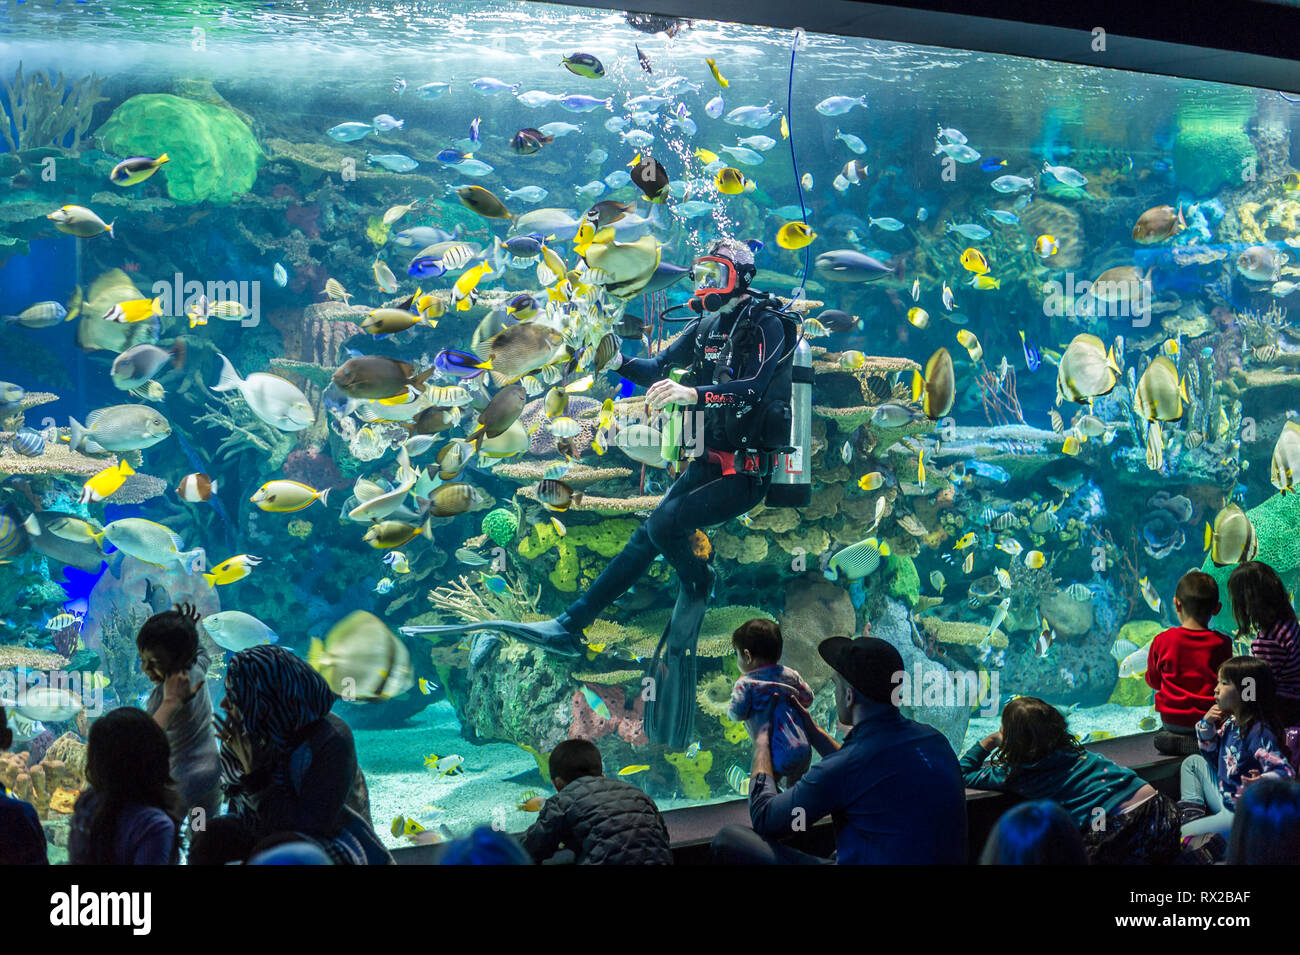 Diver entertaining visitors of Ripley's Aquarium in Toronto Stock Photo